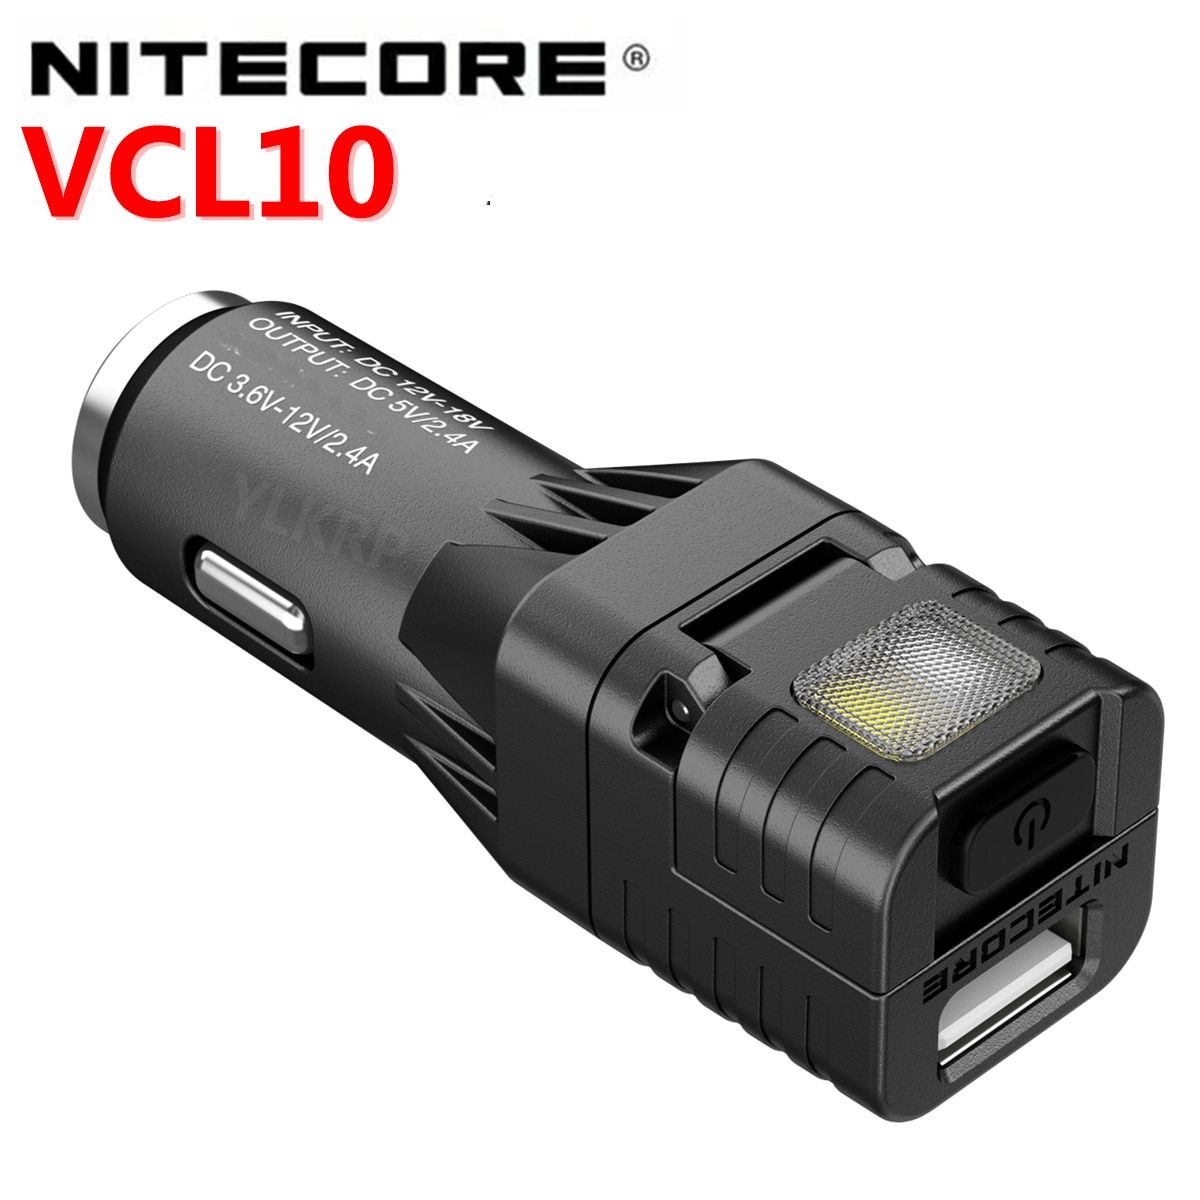 Nitecore VCL10 Multifunctionele Alle-In-een Voertuig Gadget /QC3.0 Voertuig Lader/Glas Breaker/Noodverlichting/Waarschuwingslampje